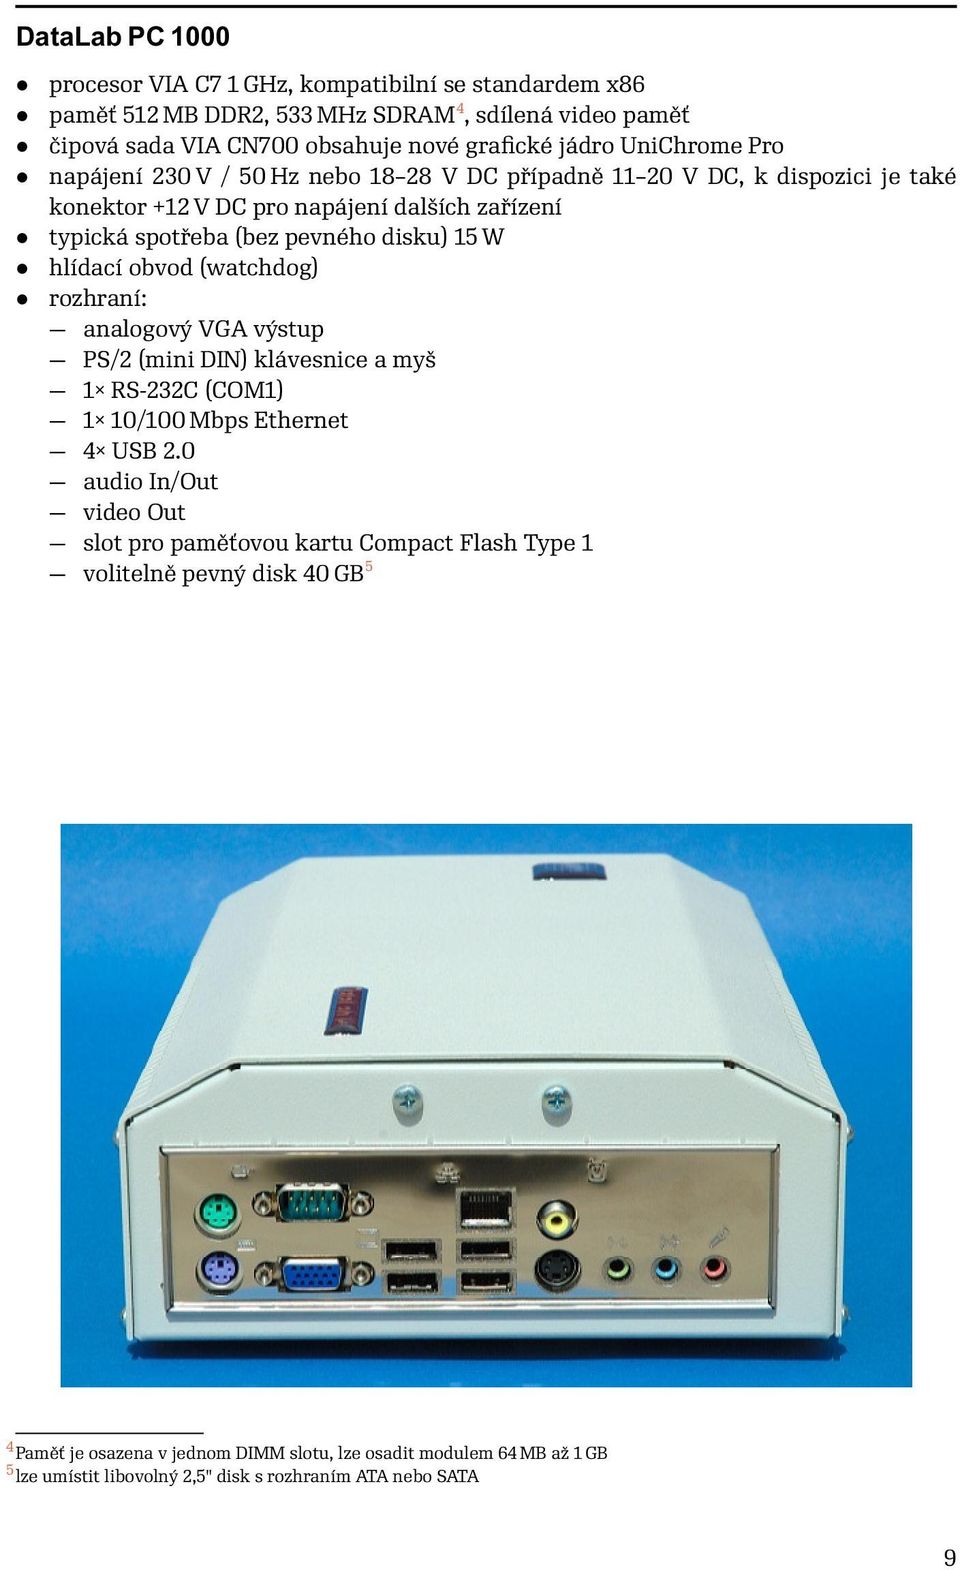 W hlídací obvod (watchdog) rozhraní: analogový VGA výstup PS/2 (mini DIN) klávesnice a myš 1 RS-232C (COM1) 1 10/100 Mbps Ethernet 4 USB 2.